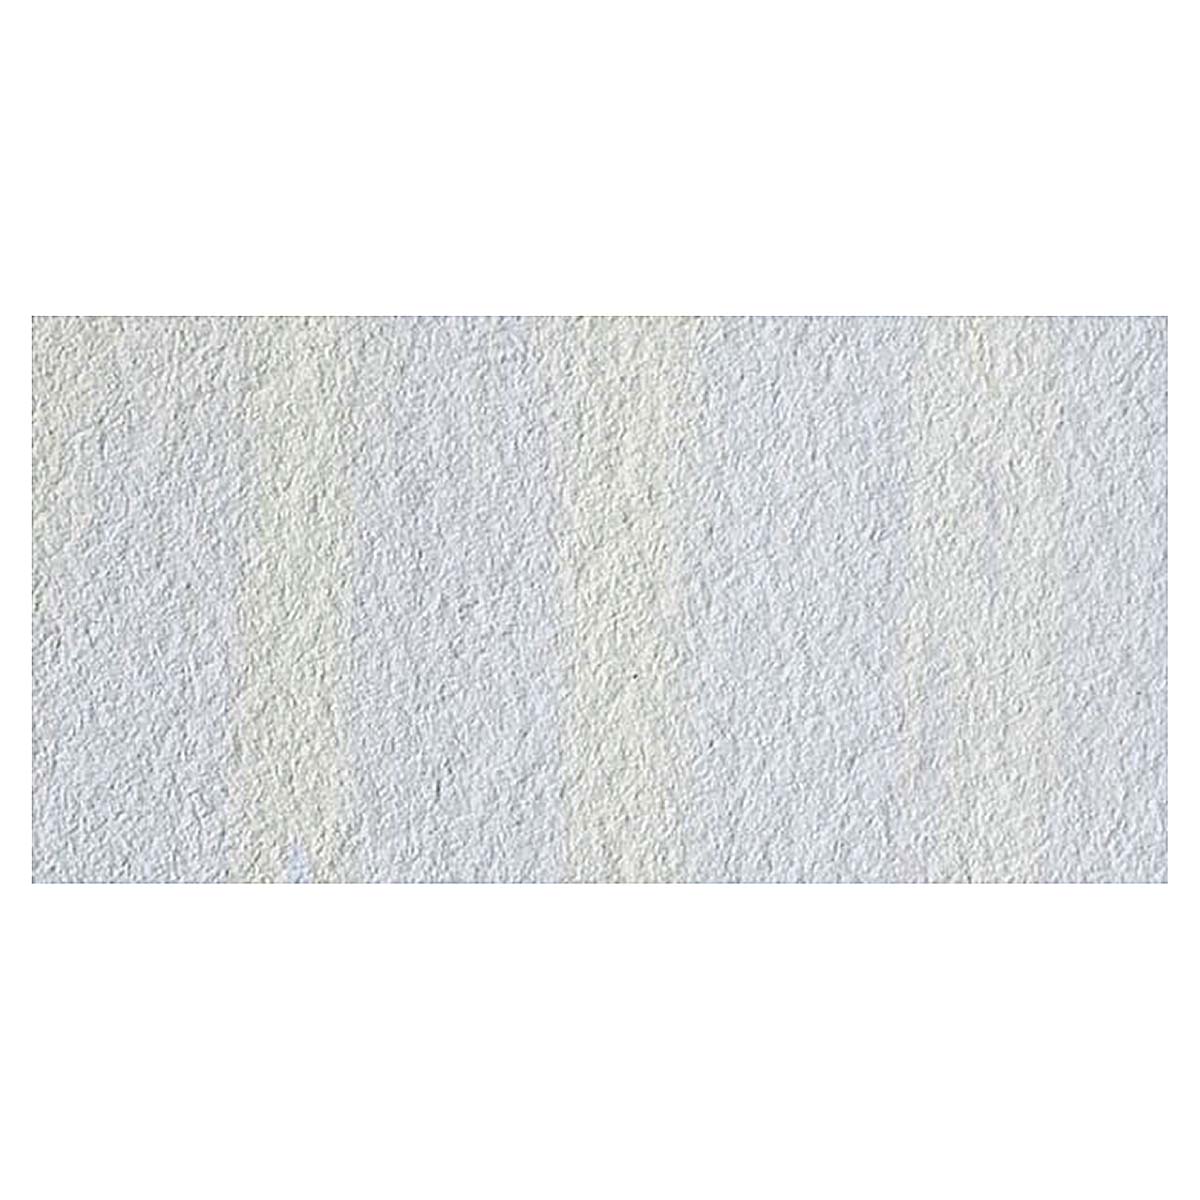 Crayola 16oz Washable Fingerpaint - White